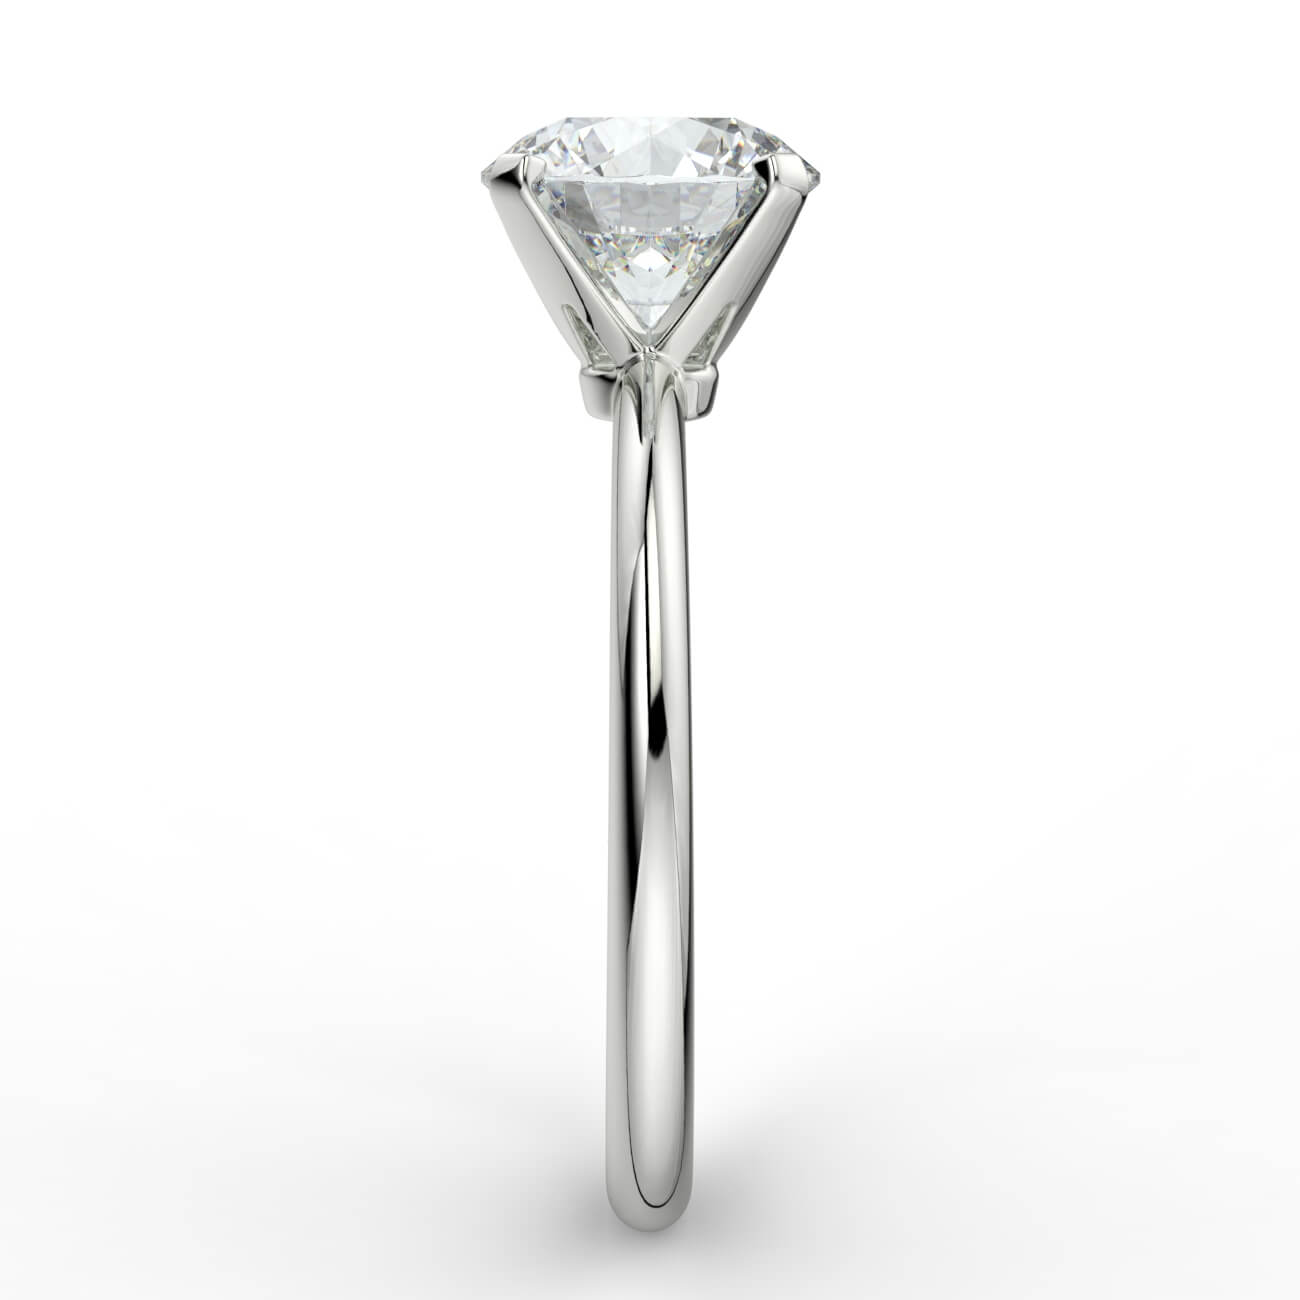 Knife-edge solitaire diamond engagement ring in white gold – Australian Diamond Network